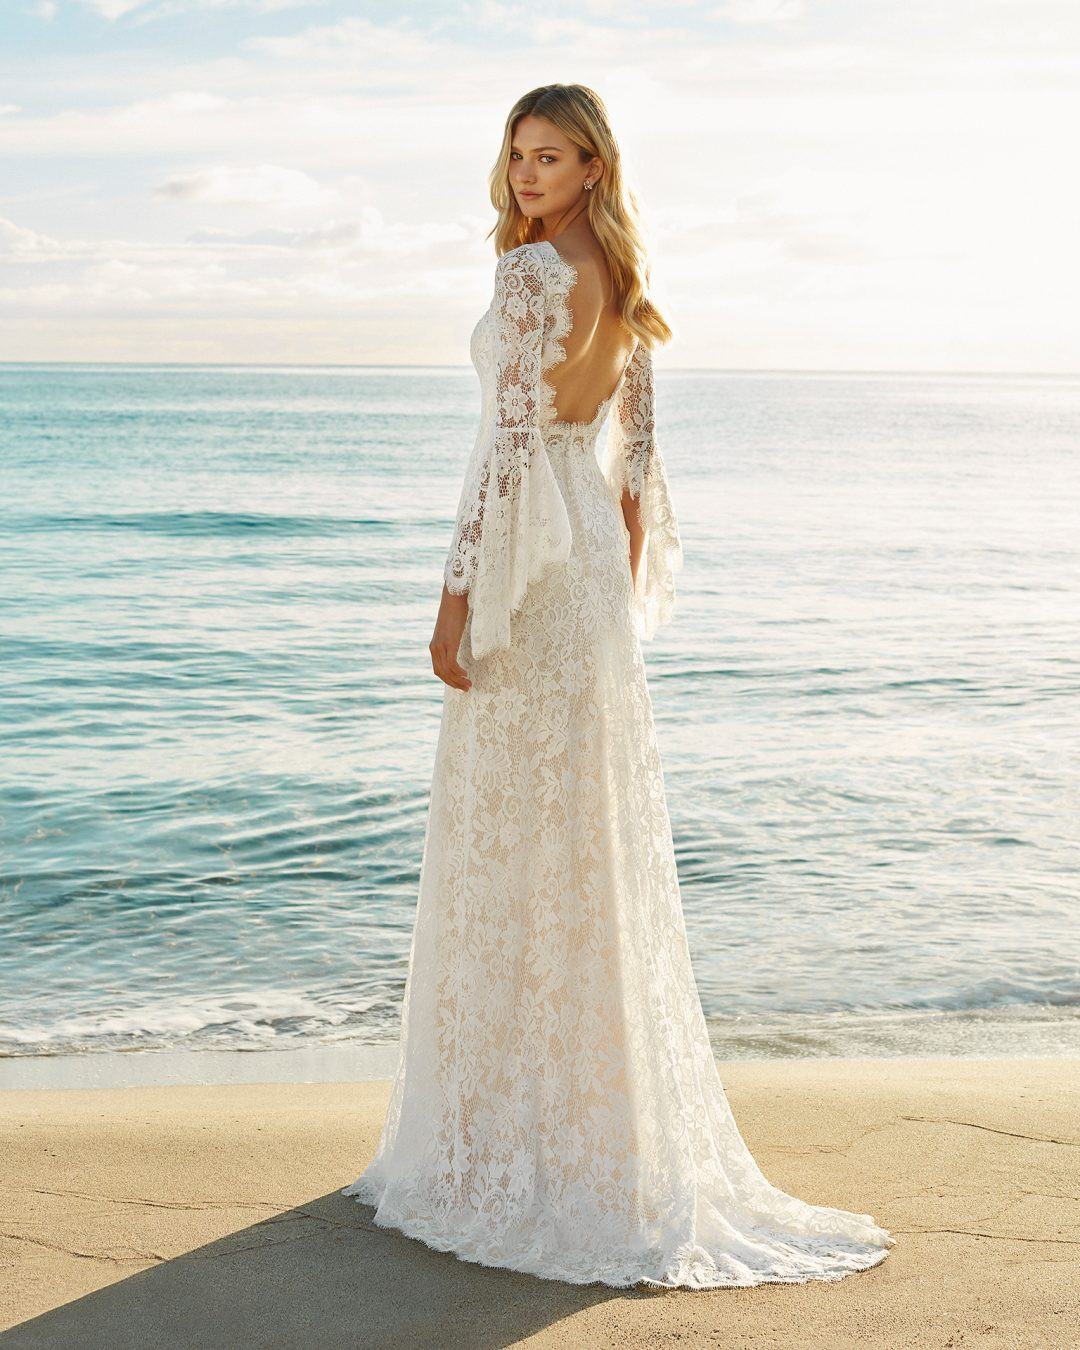 Beach Wedding Dress Ideas
 65 Best Beach Wedding Dresses Ideas inspiront